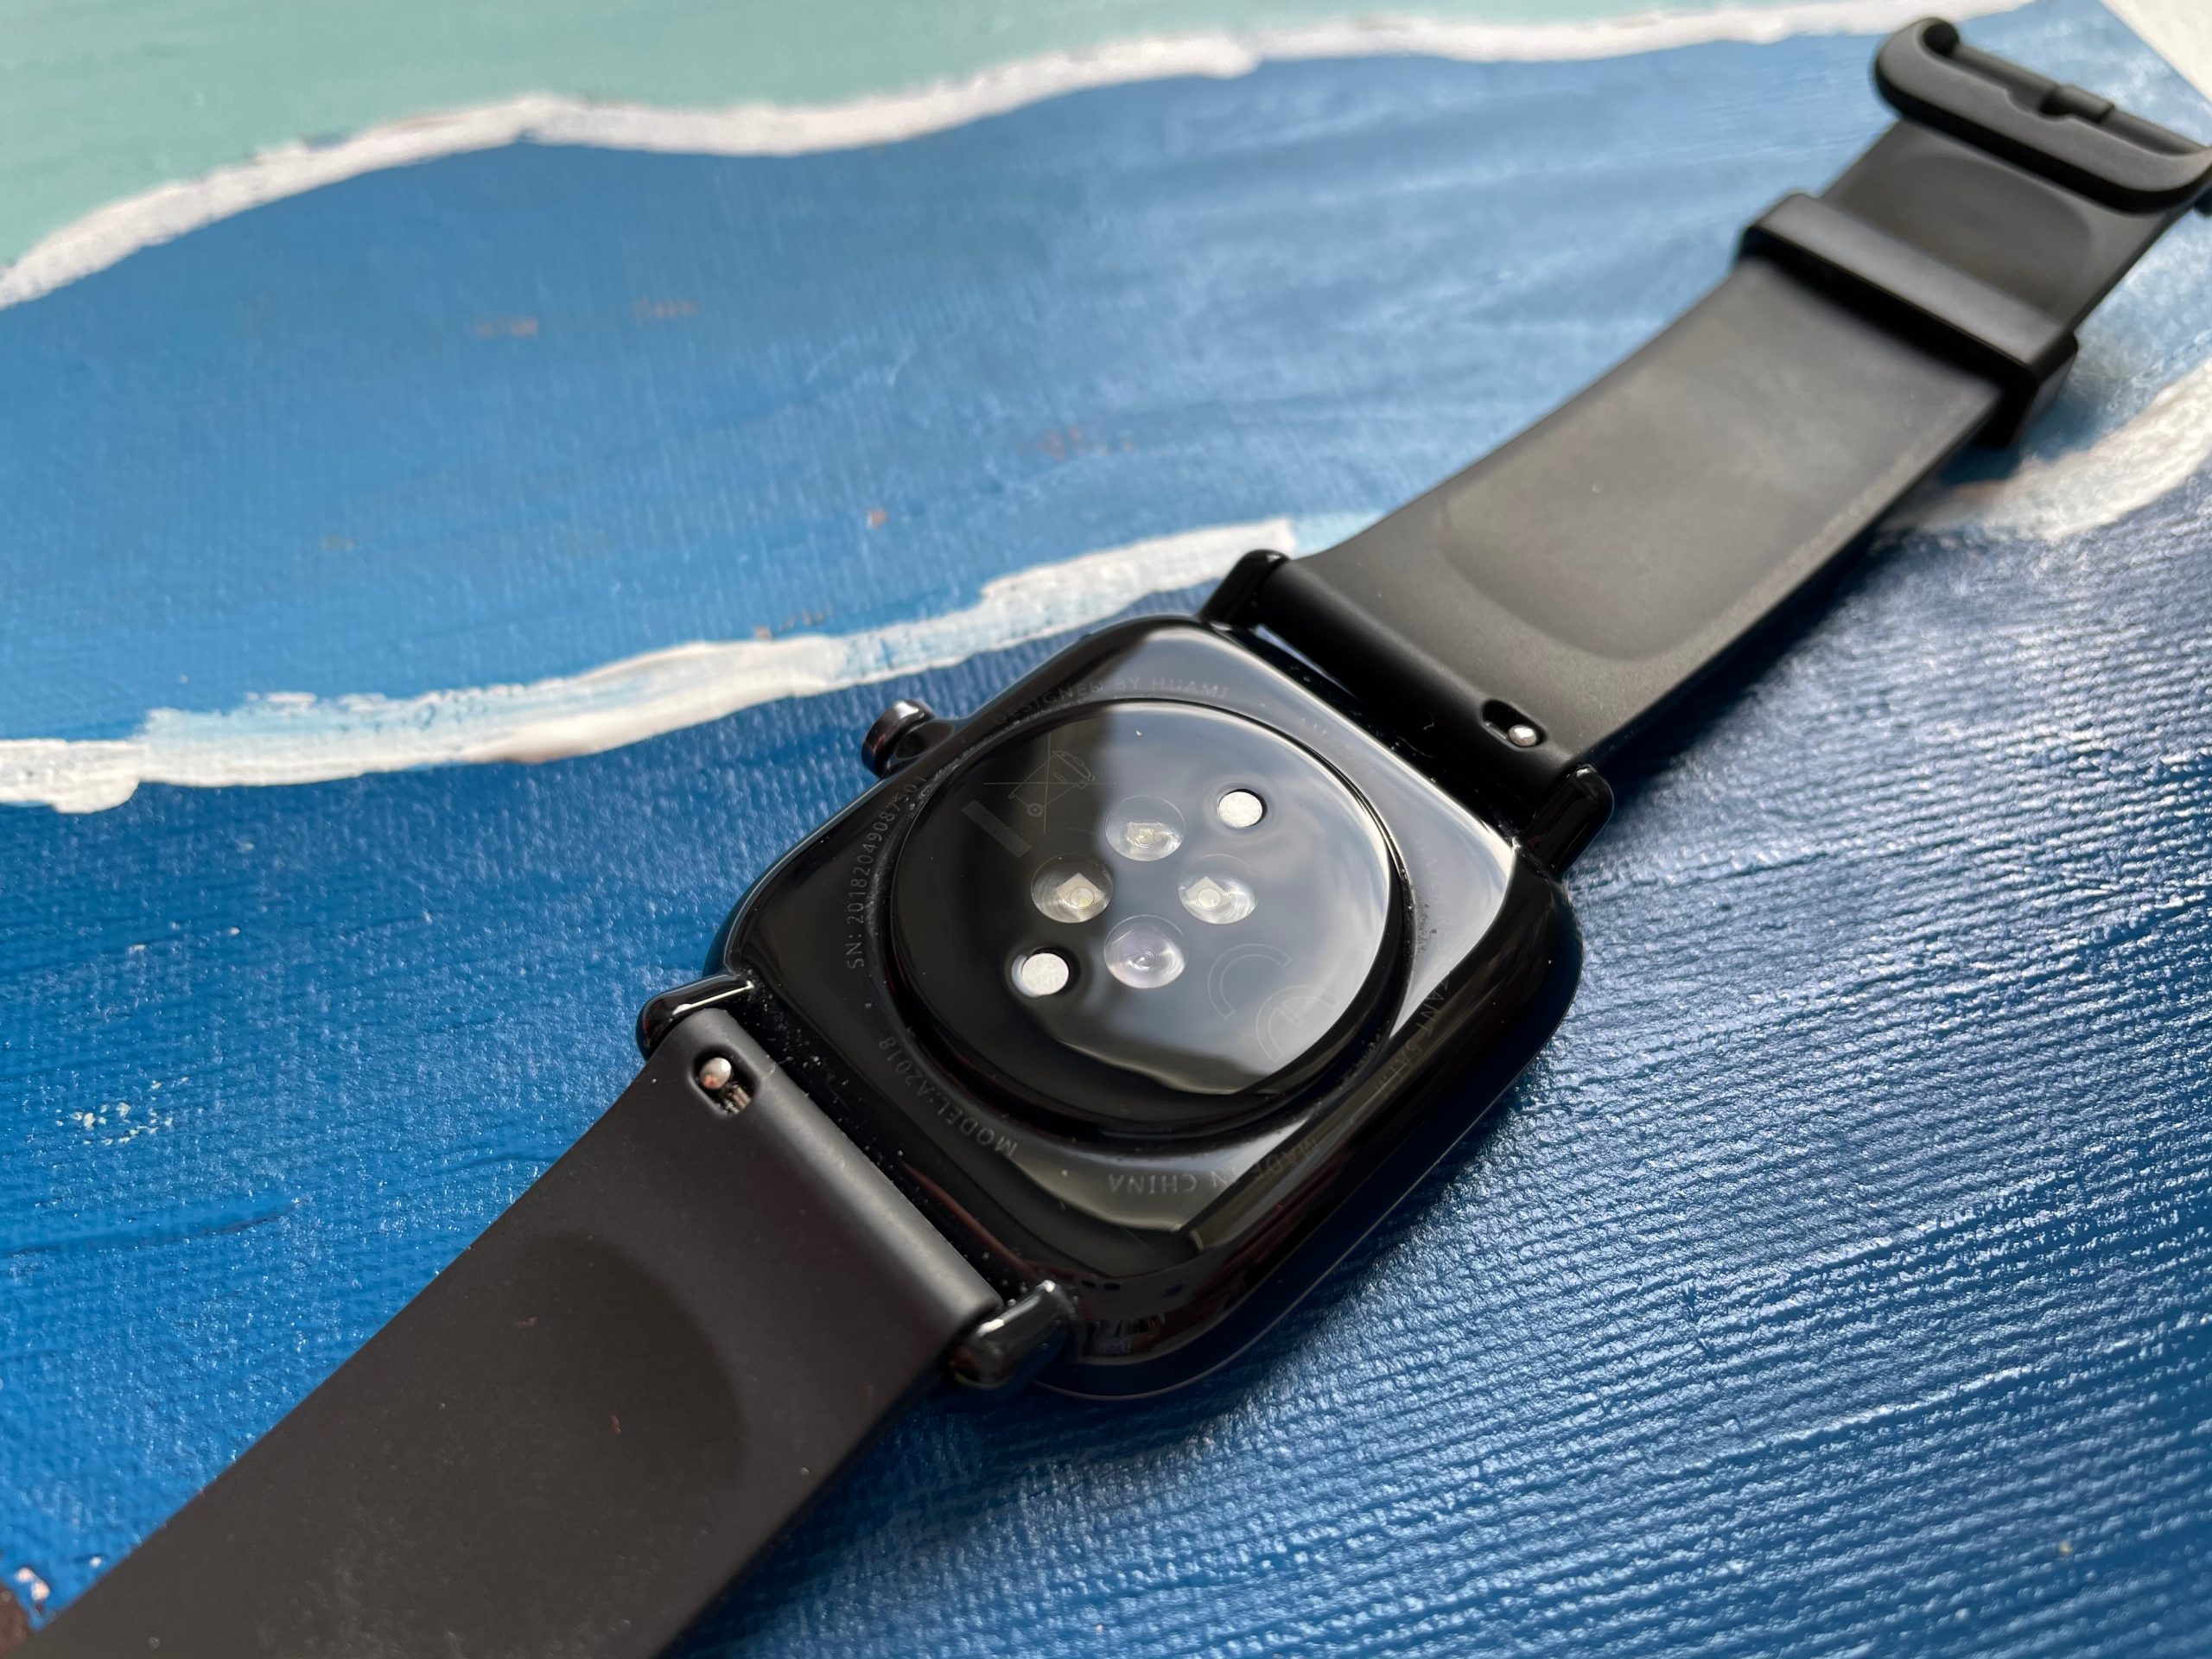 Обзор Amazfit GTS 2 mini: стильные и недорогие умные часы с функционалом топовых моделей фото